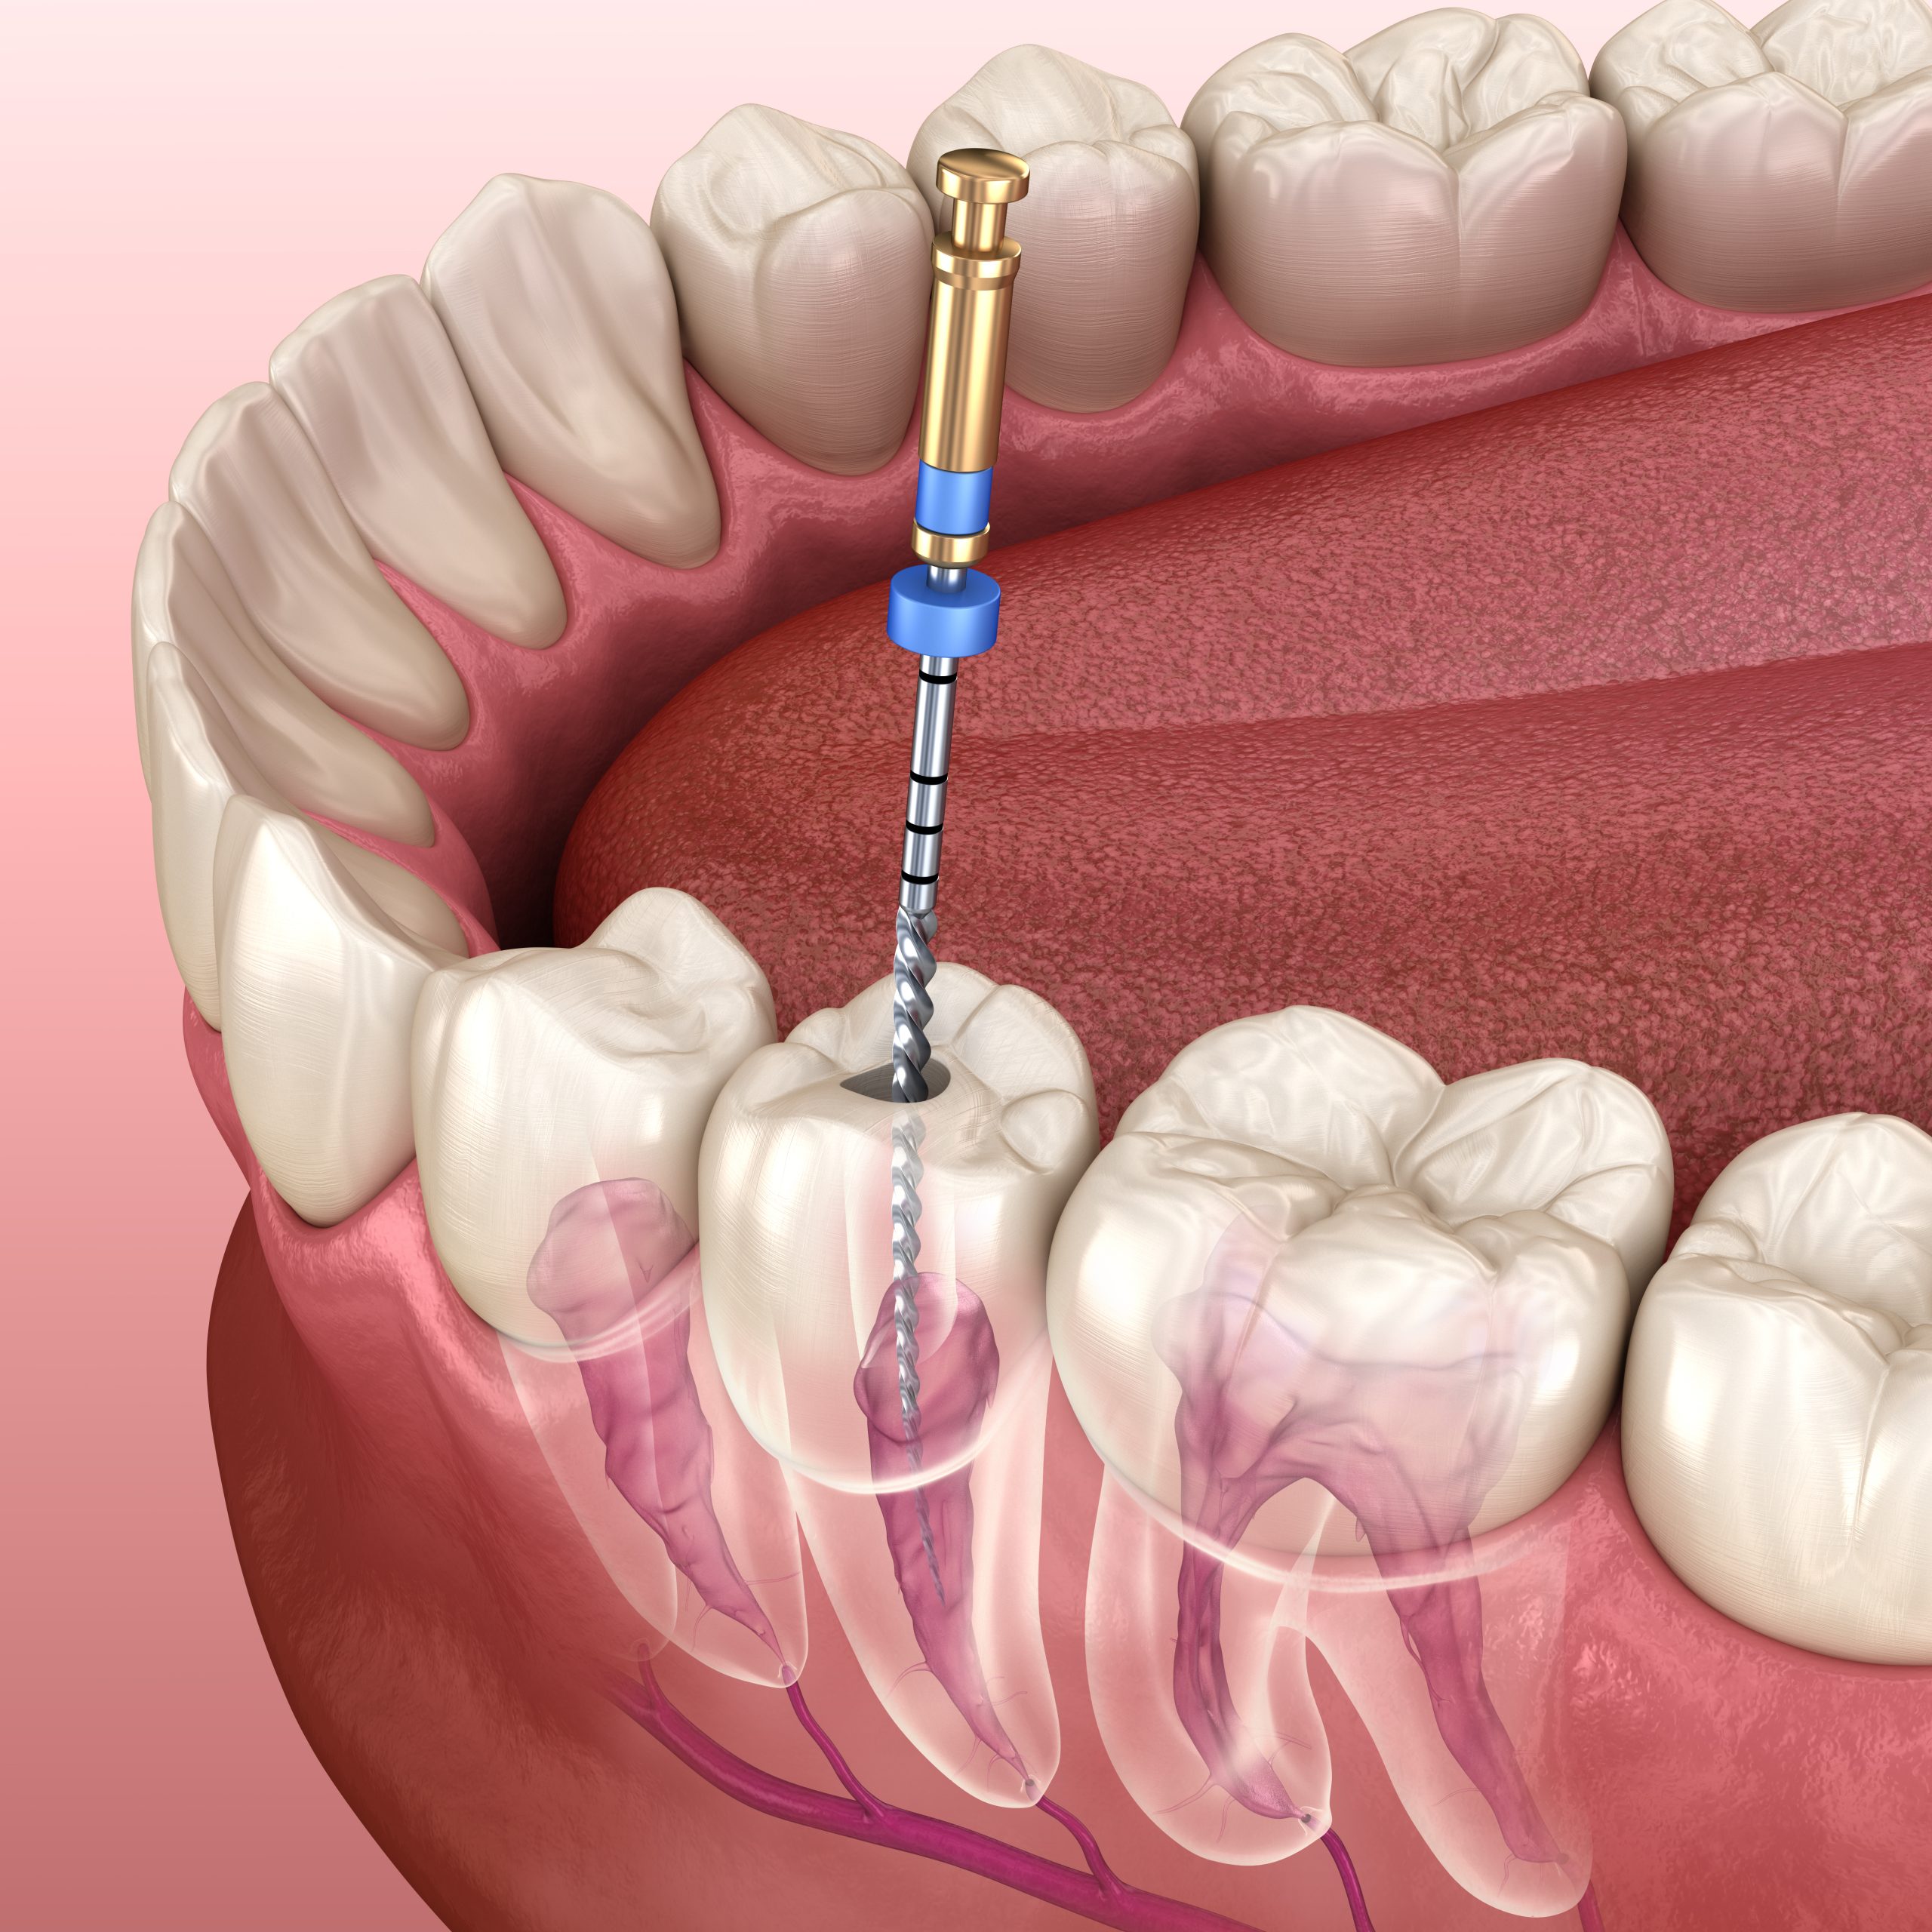 ابزار عصبکشی دندان فایل روتاری با دستگاه روتاری